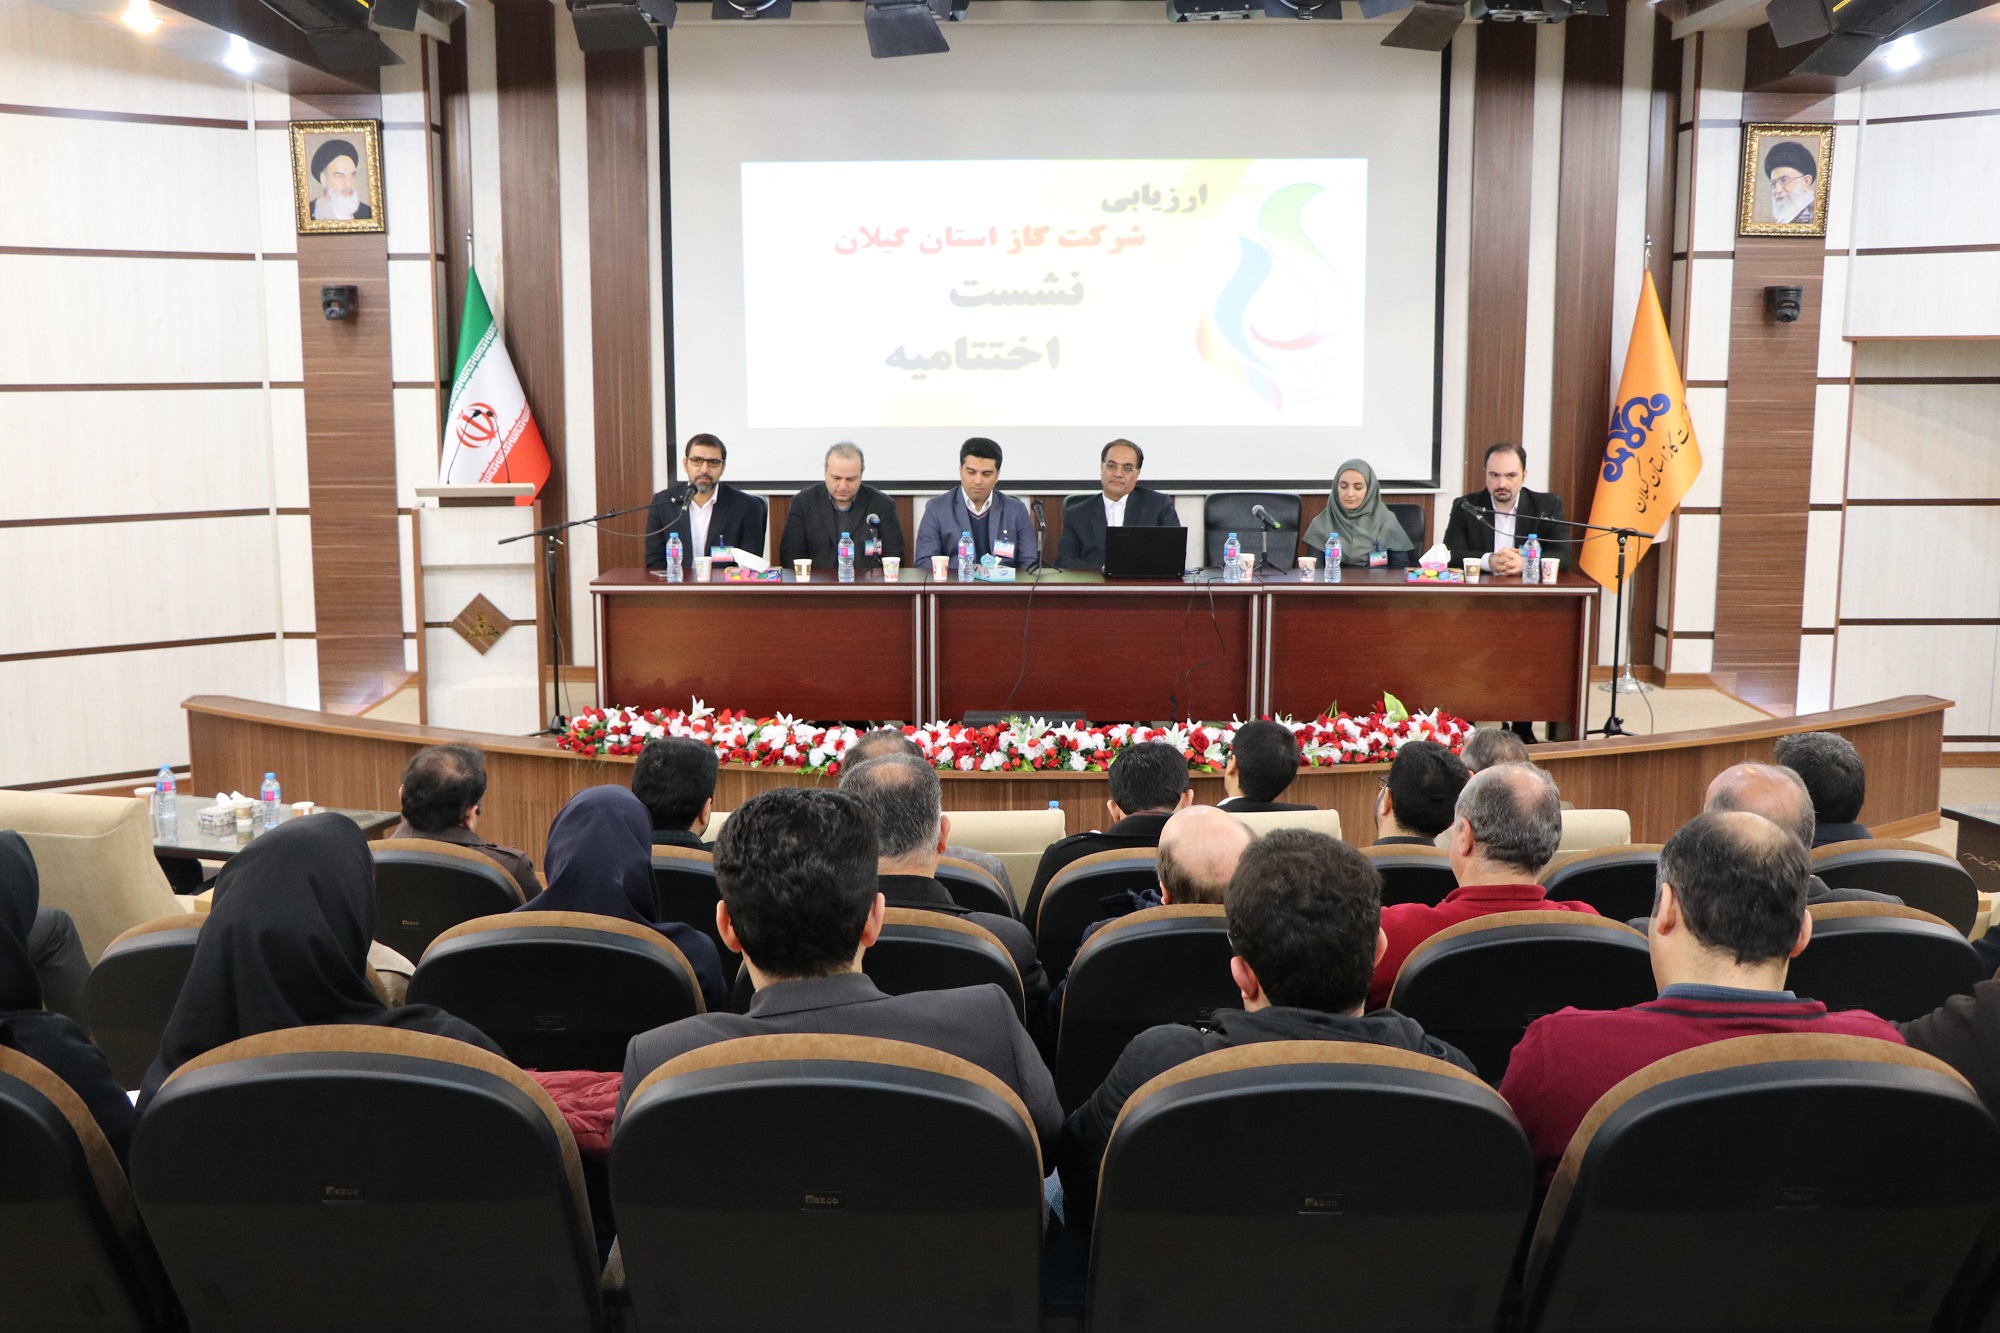 مراسم اختتامیه ارزیابی سرآمدی و بهبود مستمر صنعت نفت در شرکت گاز استان گیلان برگزار شد